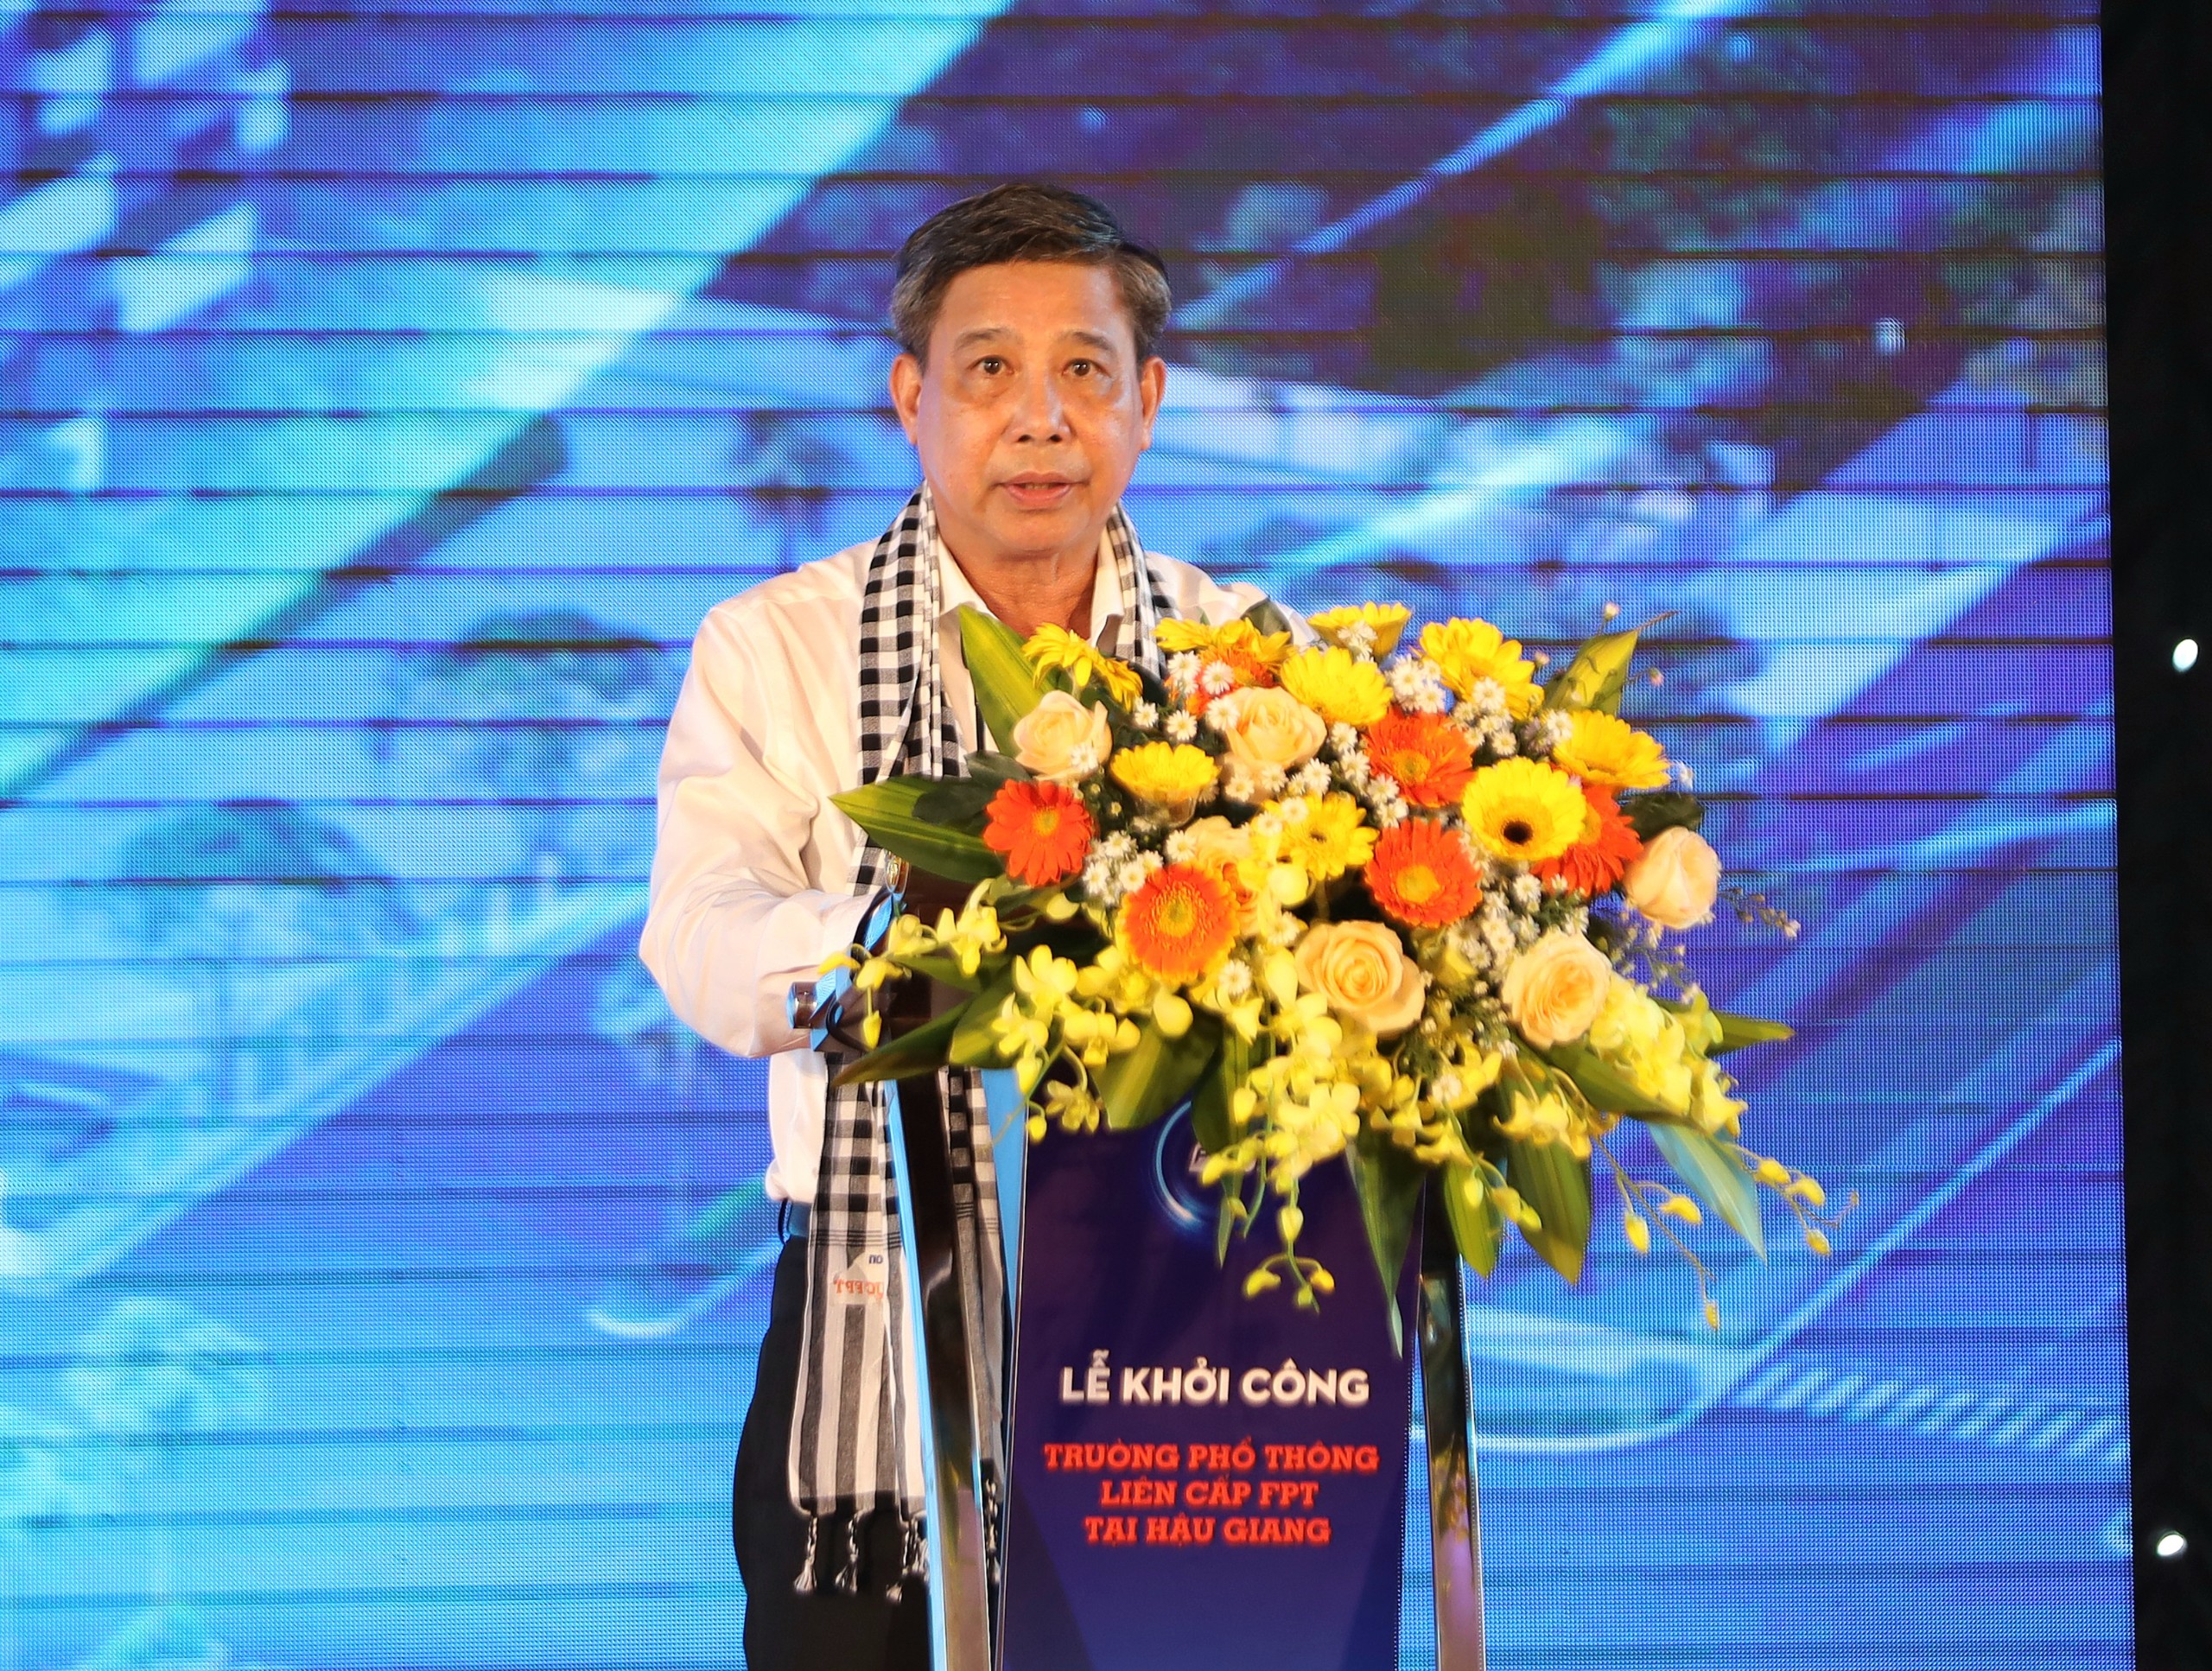 Ông Đồng Văn Thanh - Phó Bí thư Tỉnh ủy, Chủ tịch UBND tỉnh Hậu Giang phát biểu tại lễ khởi công.